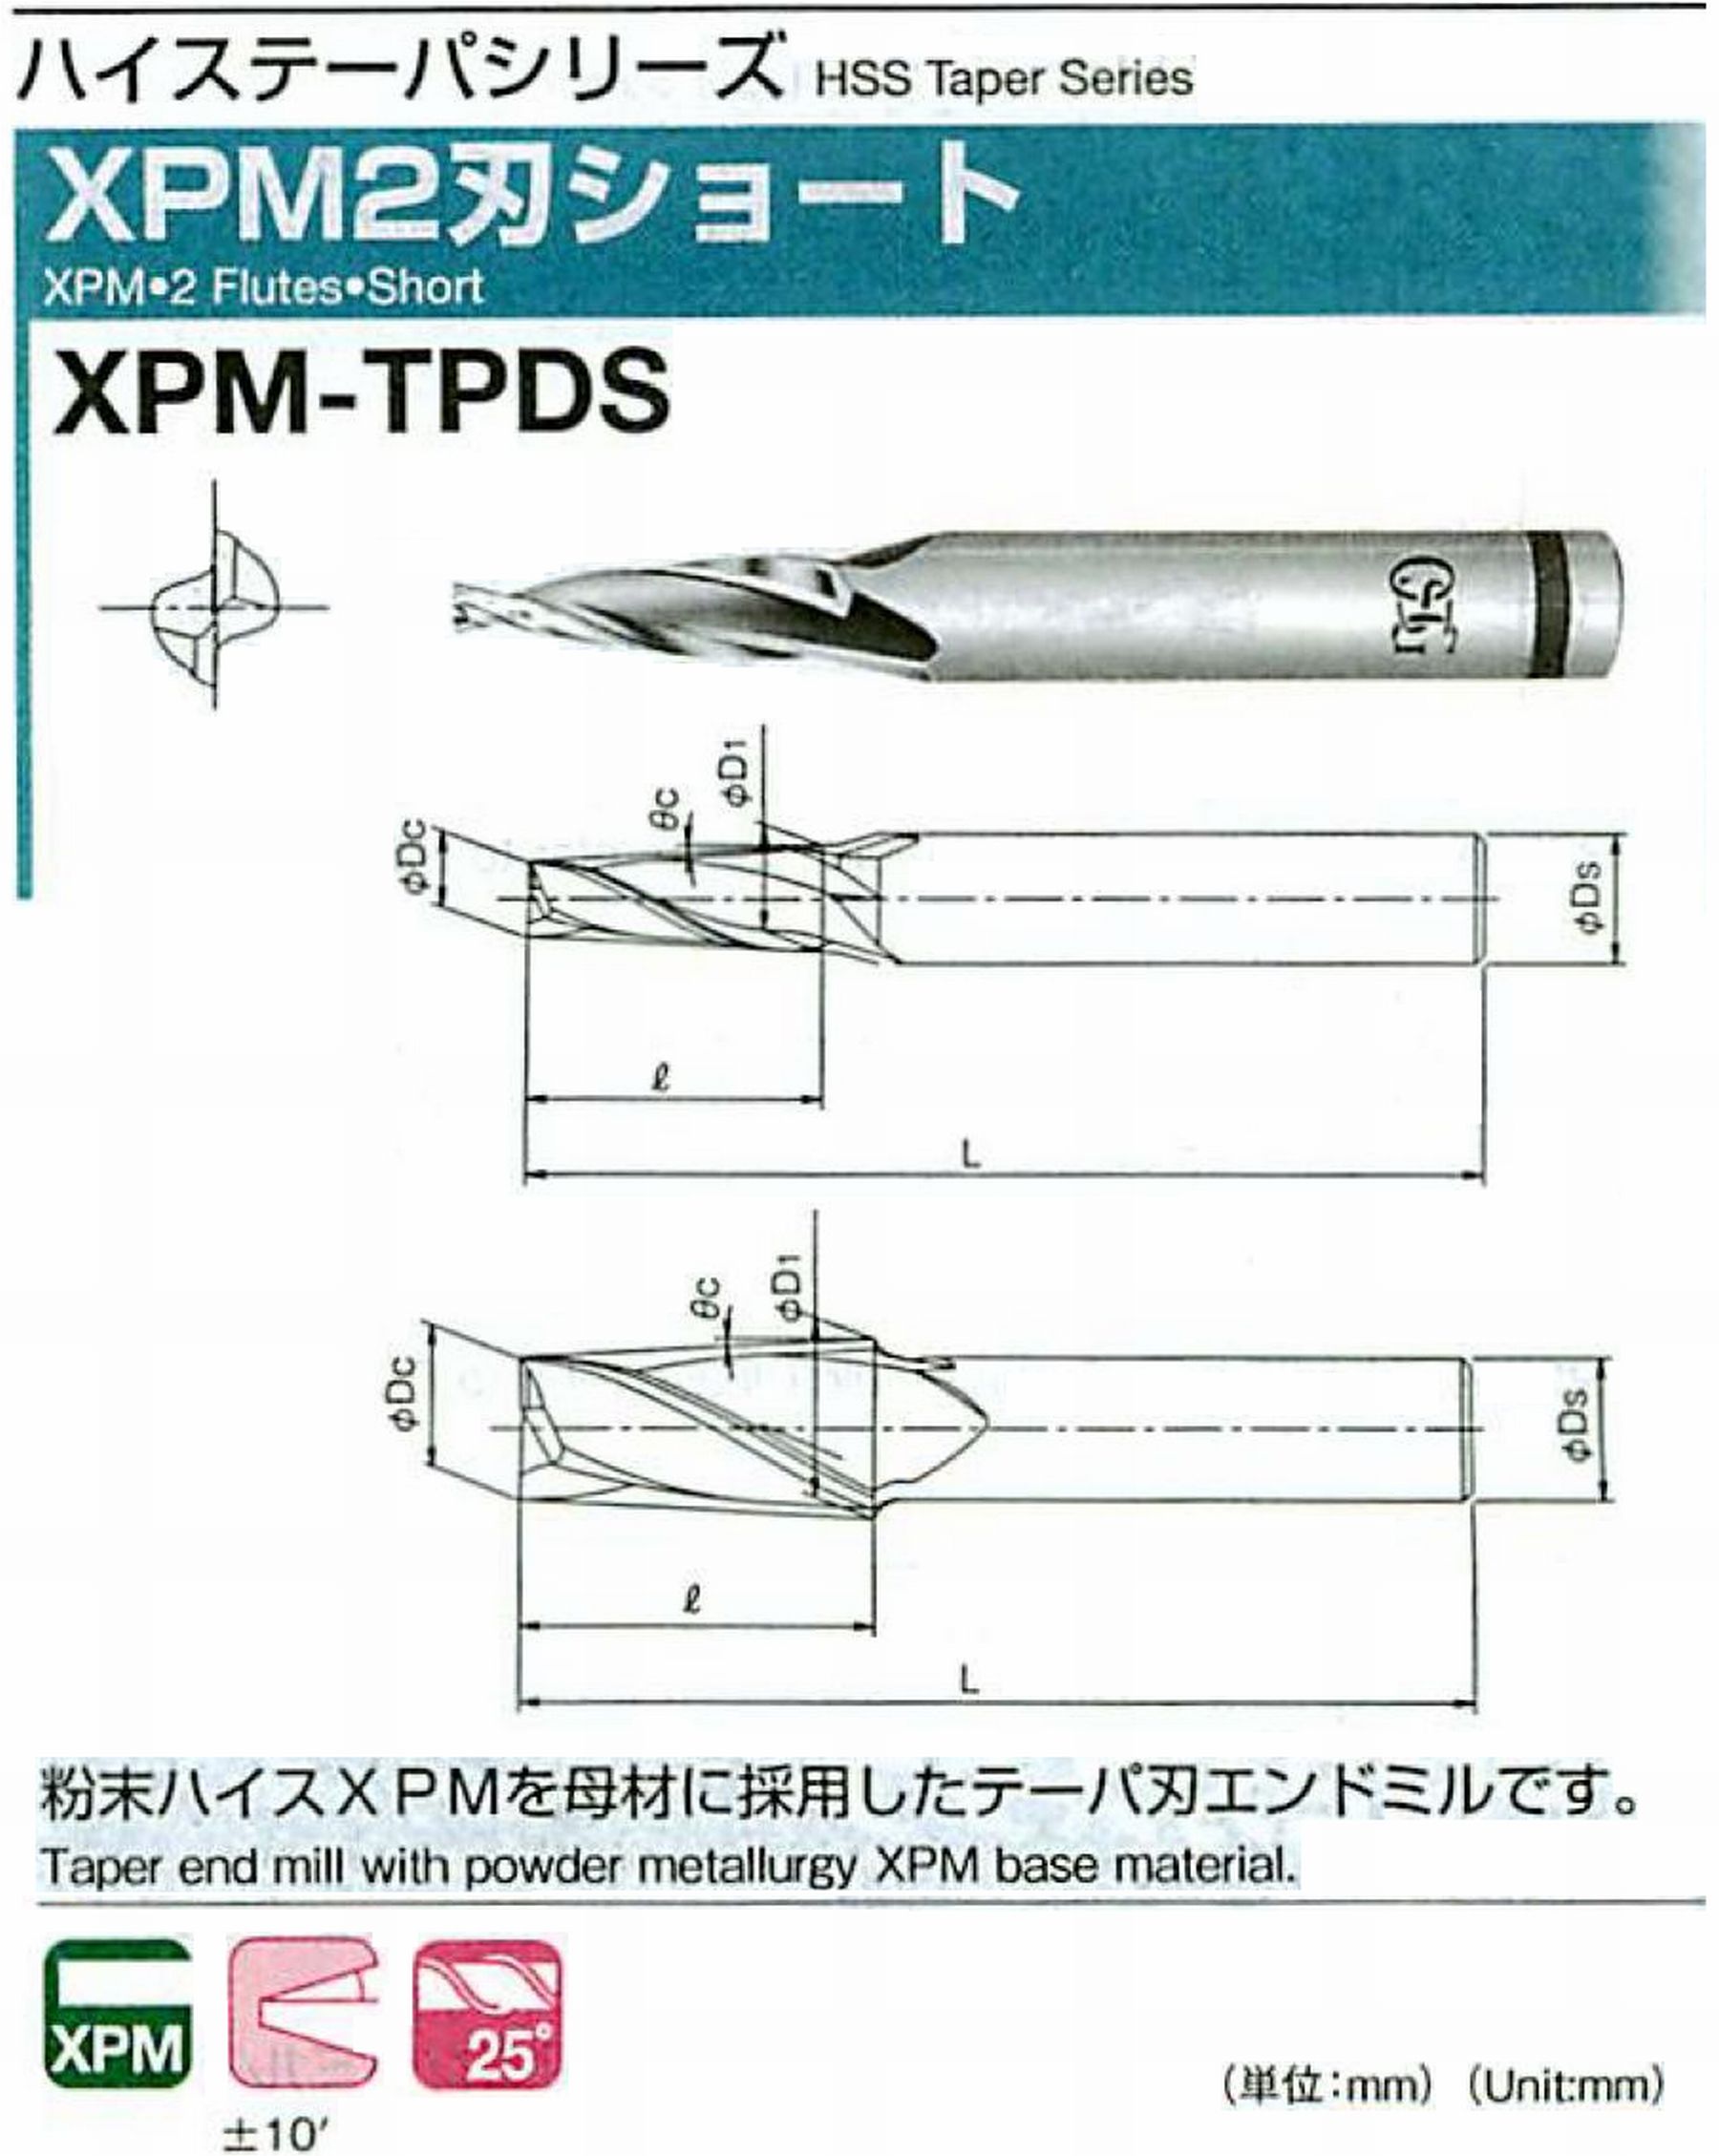 オーエスジー/OSG XPM2刃ショート XPM-TPDS 外径×刃部テーパ半角2.5×0.5° 全長54 刃長10 シャンク径6mm 大端径2.67